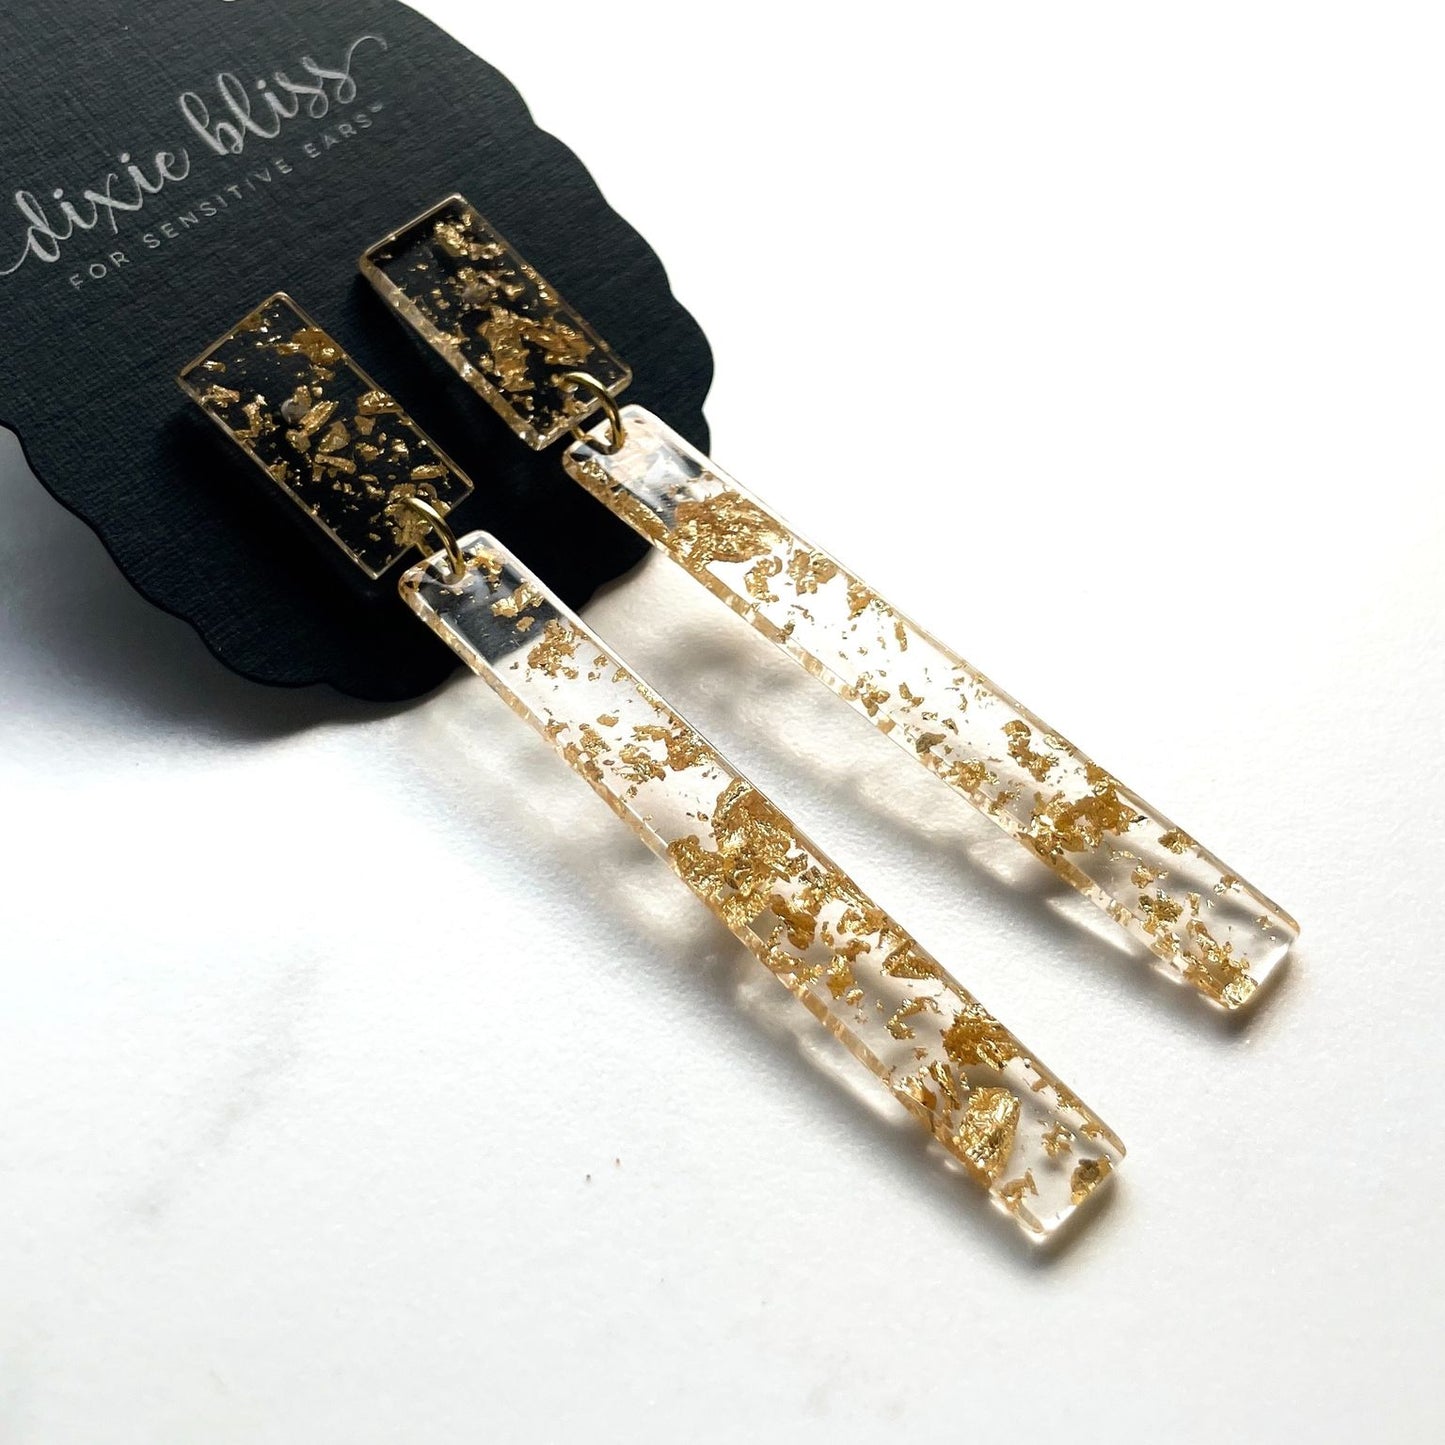 Treasure in Gold Foil earrings